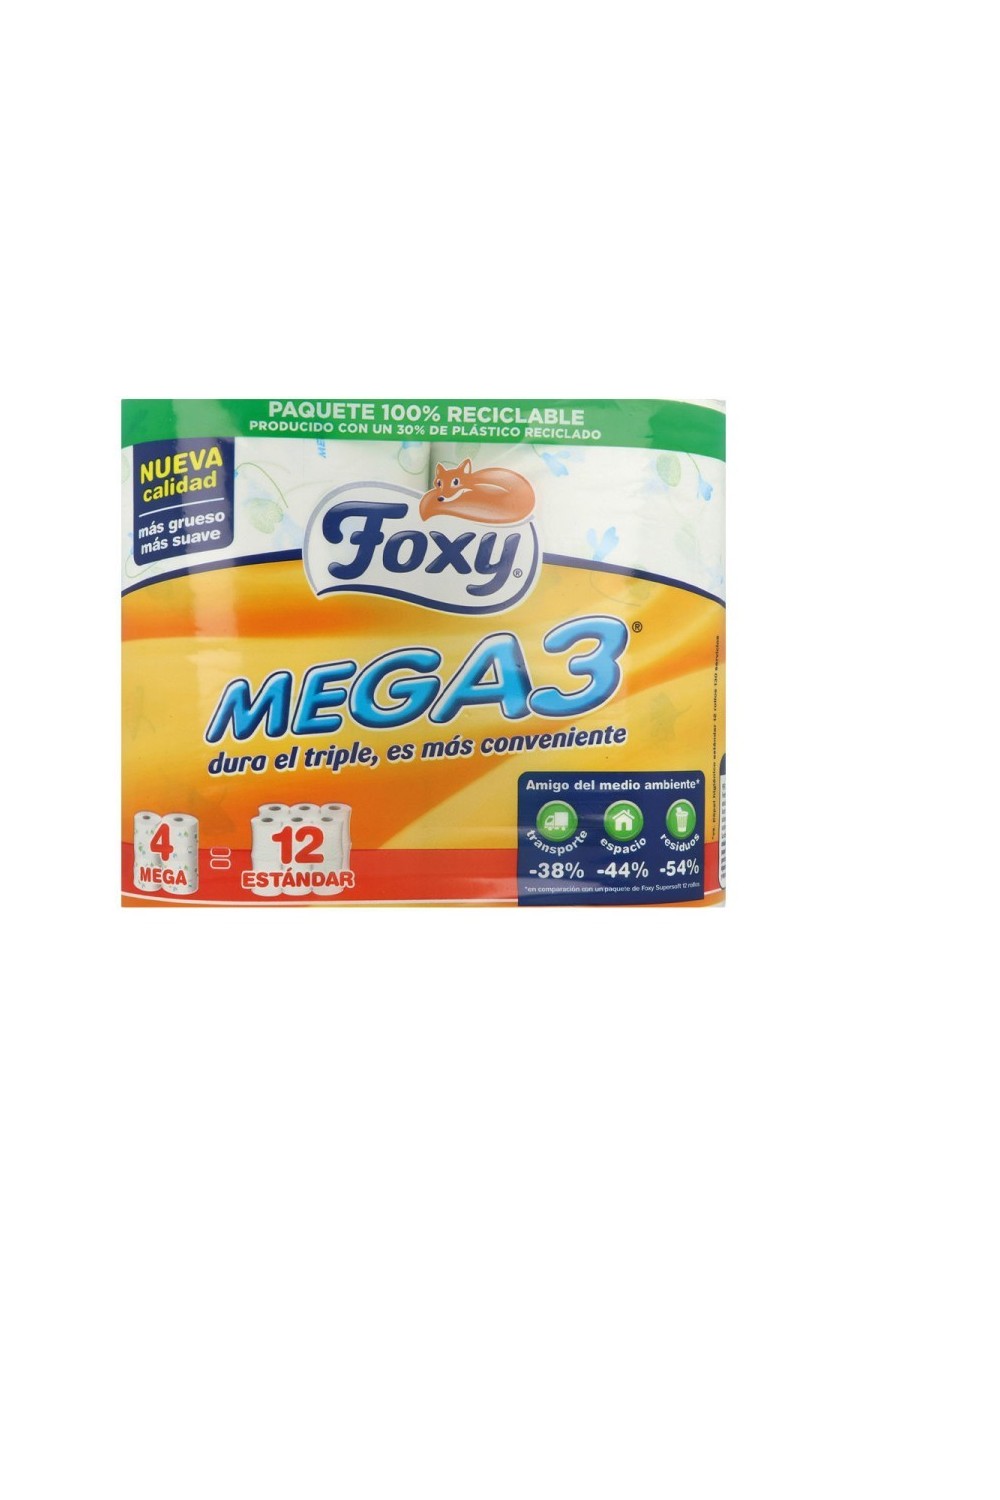 Foxy Mega3 Papel Higiénico Triple Duración 4 Rollos